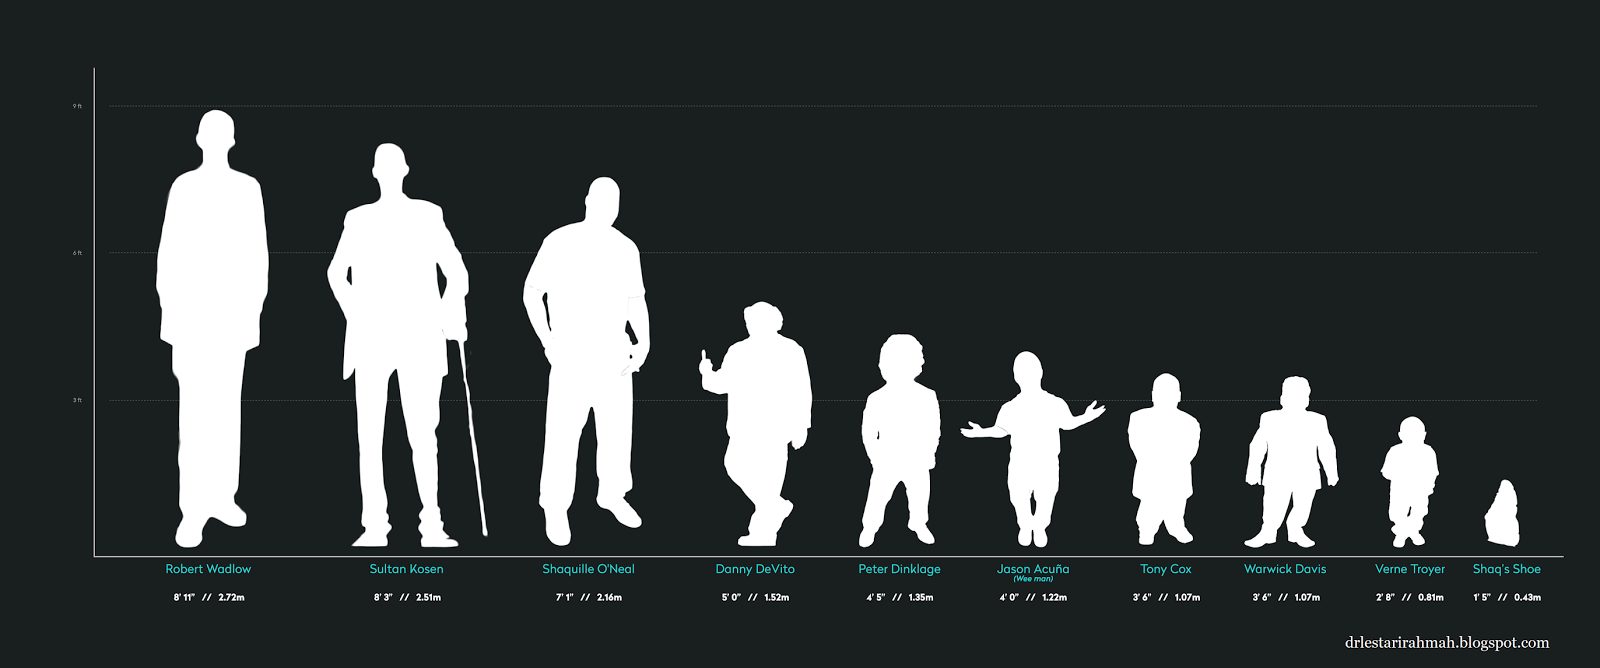 Метры по сравнению с человеком. Рост человека. Сравнения рогсгта человека. Люди по росту. Сравнение роса человека.